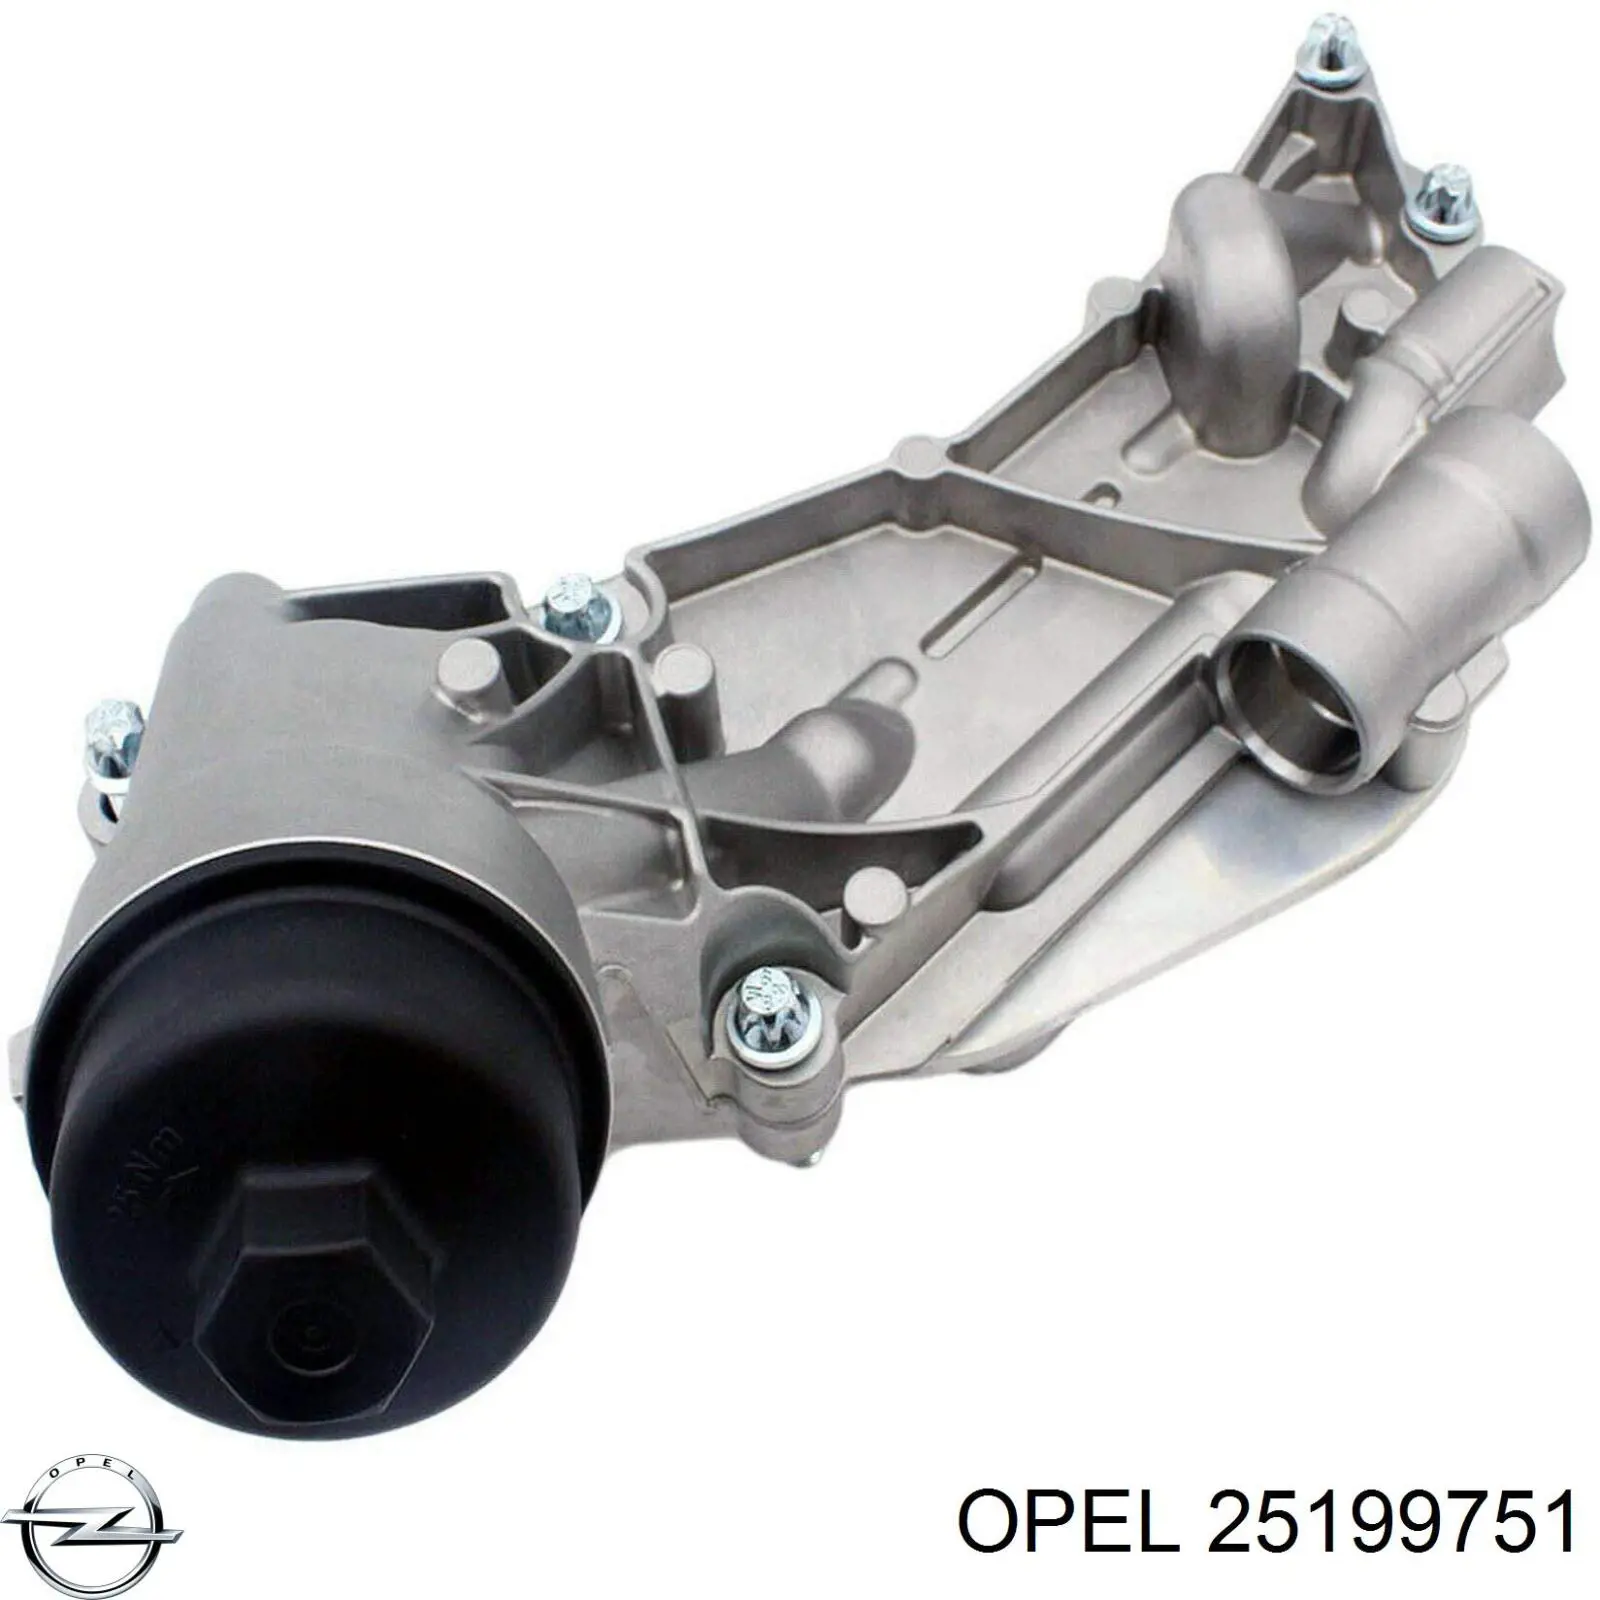 25199751 Opel caja, filtro de aceite